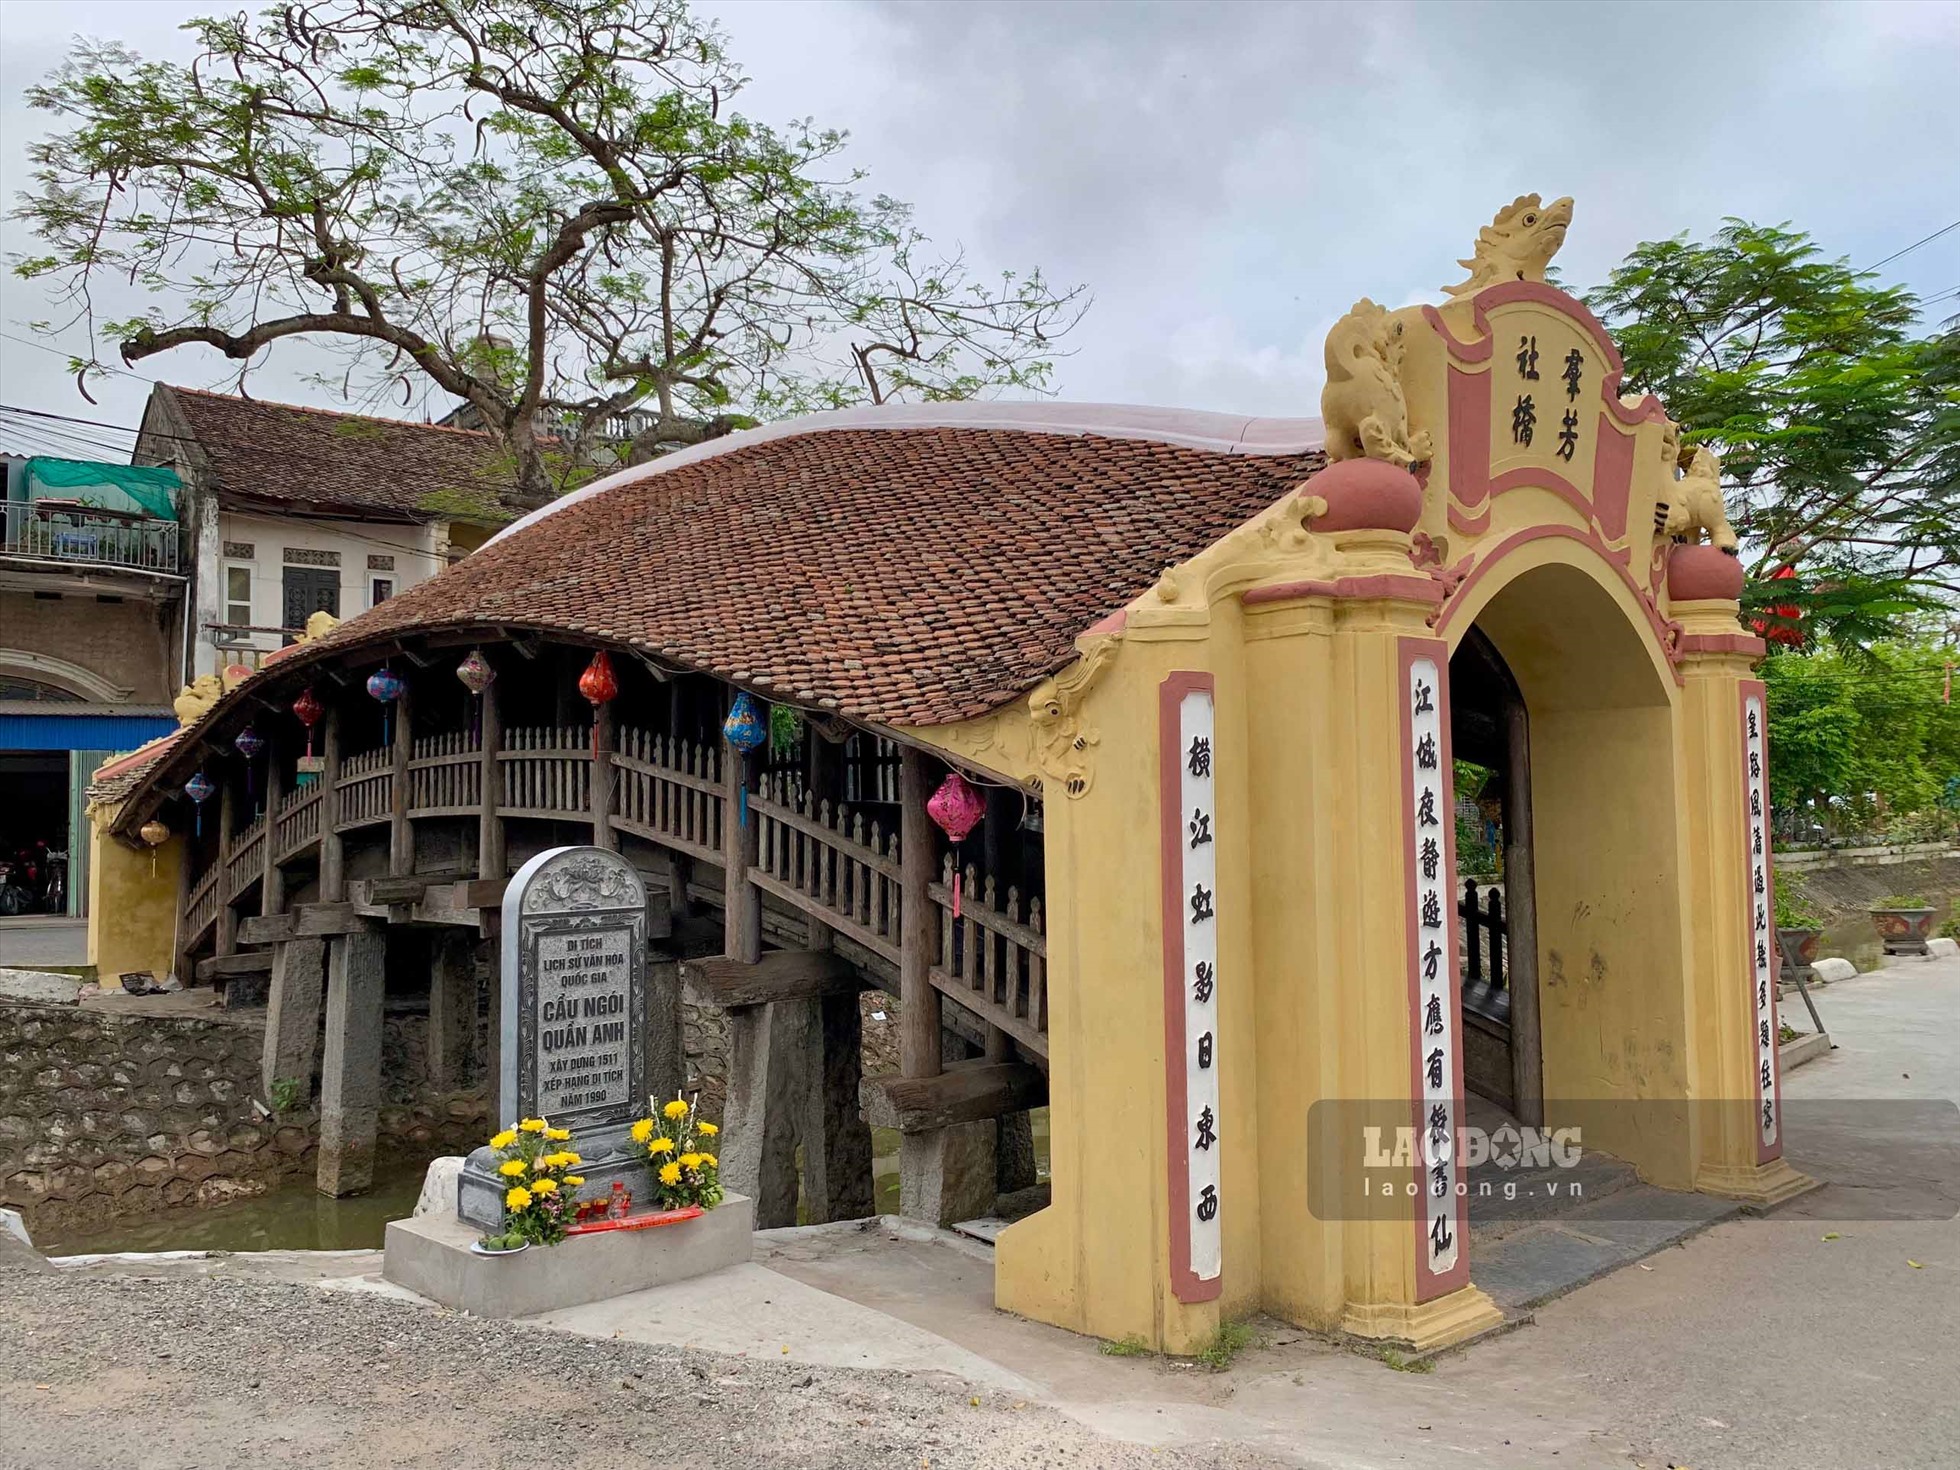 Ngoài cầu Lợp làng Kênh, ở Nam Định còn có cầu Ngói chợ Lương (huyện Hải Hậu), cầu ngói chợ Thượng (huyện Nam Trực) vẫn còn giữ được thiết kế với kiểu kiến trúc “Thượng gia hạ kiều“, tức trên là nhà, dưới là cầu.